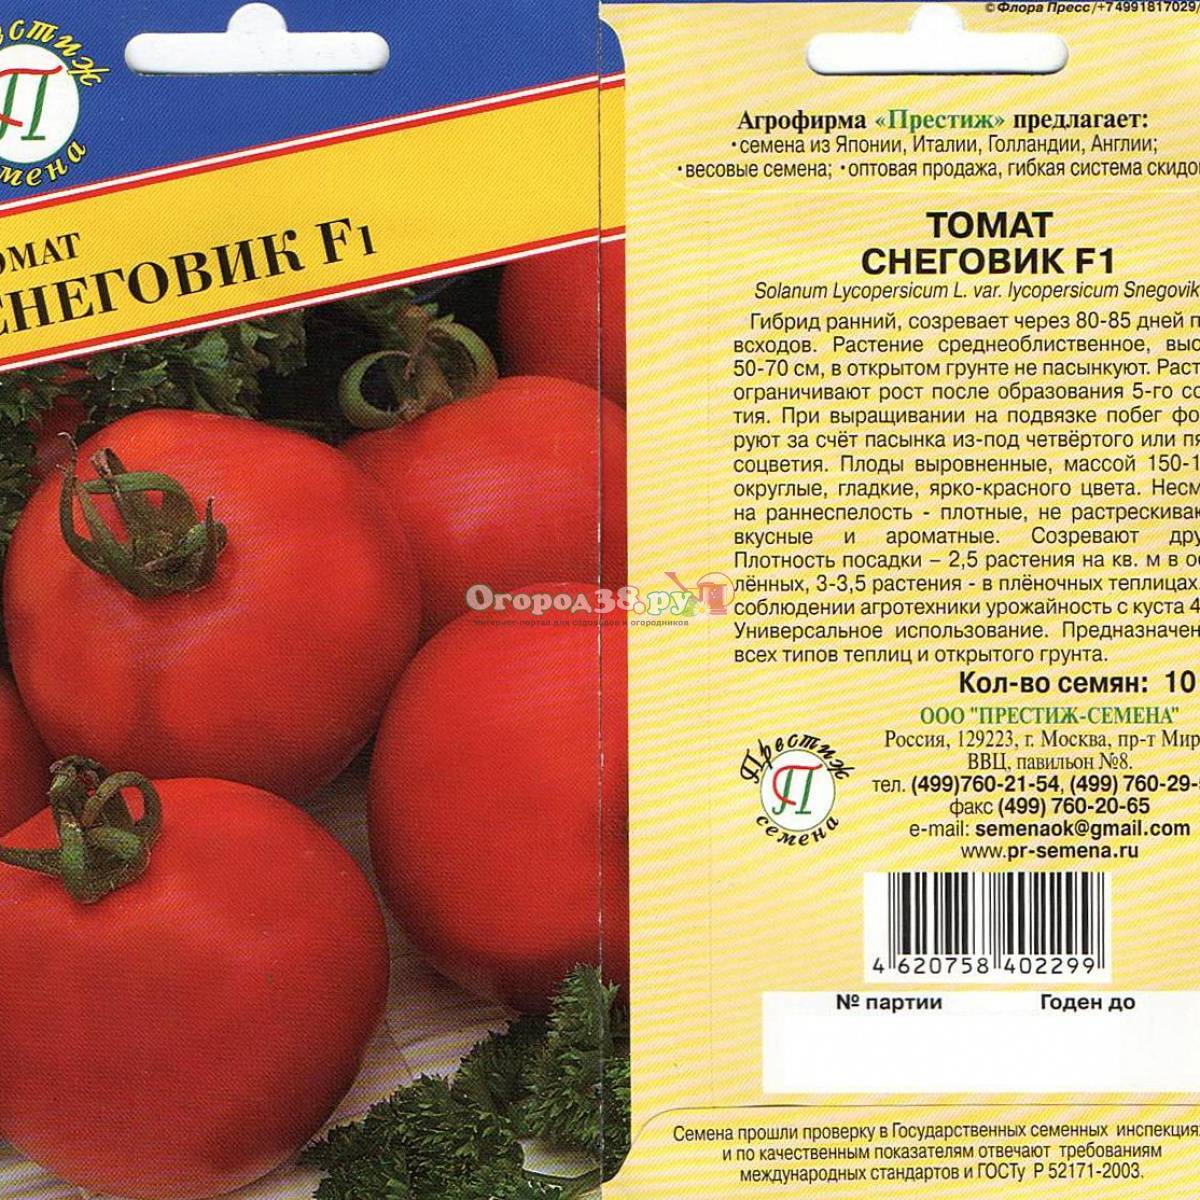 Томат снеговик f1: описание и характеристика сорта, отзывы об урожайности помидоров, фото куста и семян сады россии